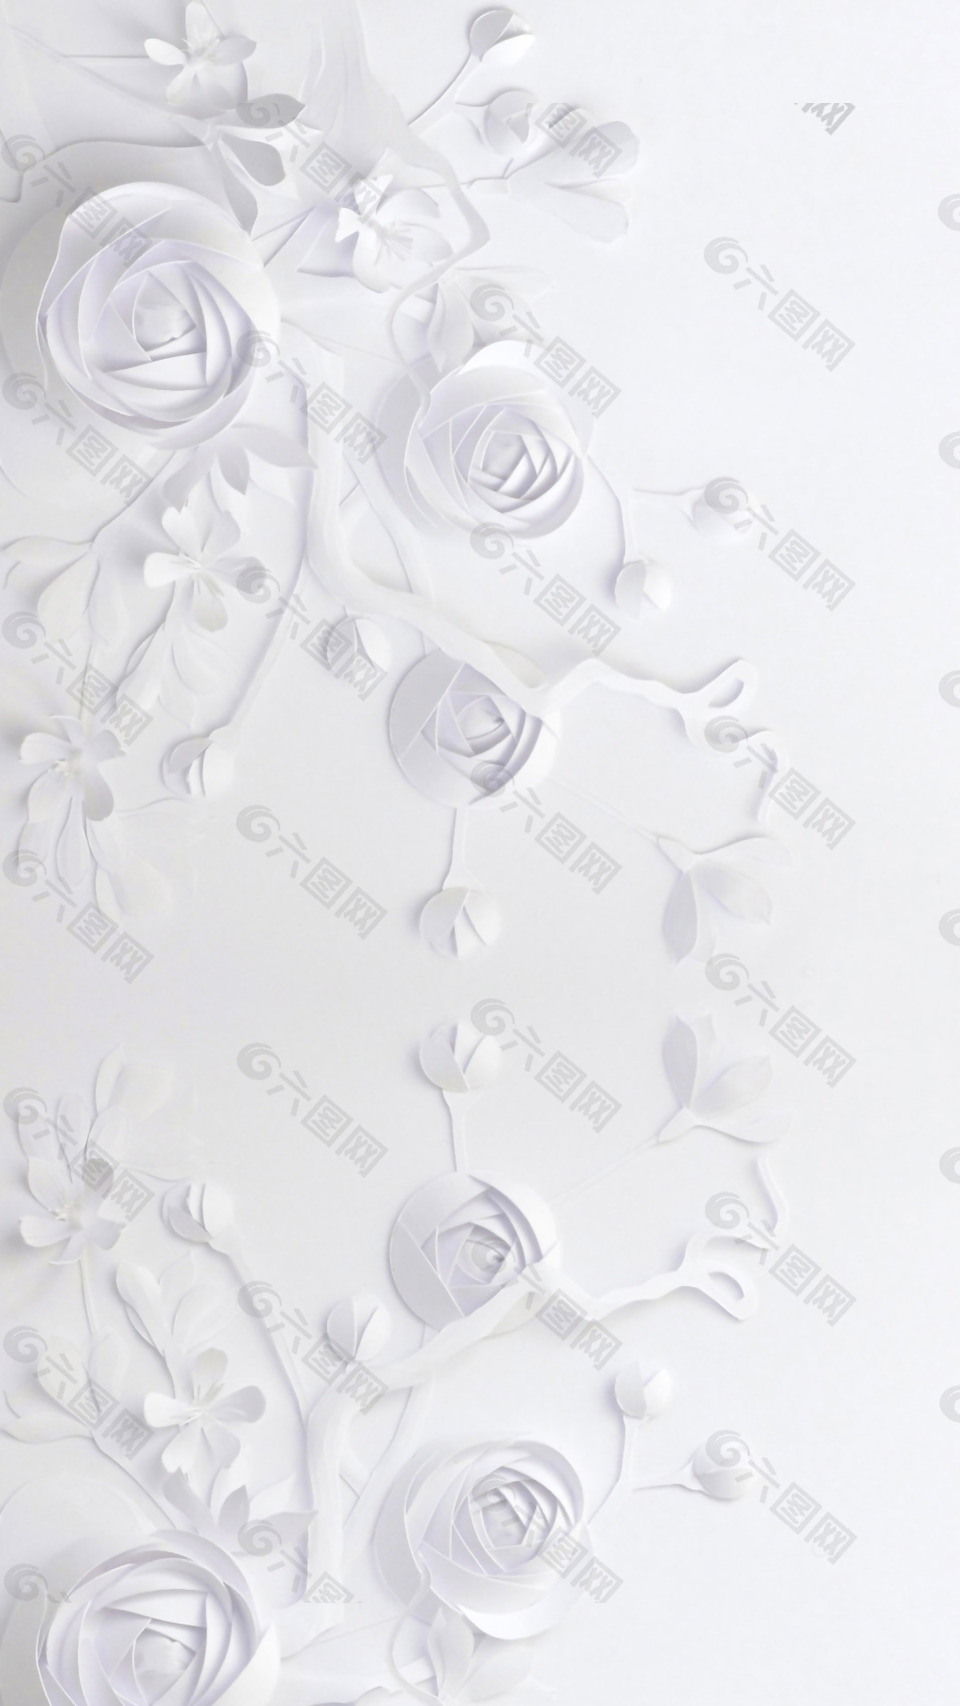 白色花朵浮雕H5背景素材